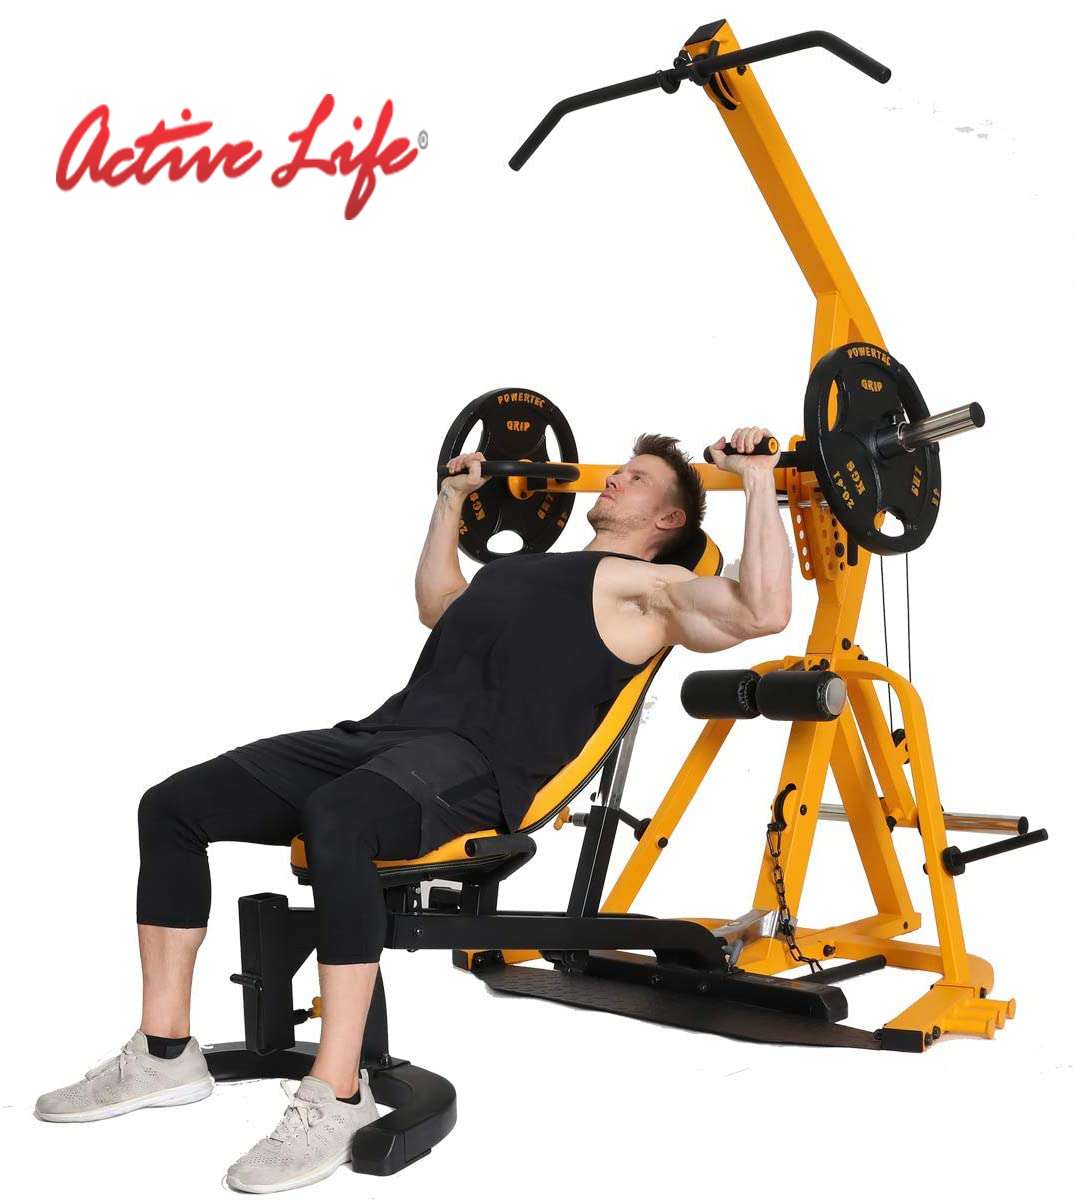 Active Life  TRAINER II- Multiestación Máquina Musculación Ejercicio  Gimnasio Entrenar 65 kg - S/. 3350.00